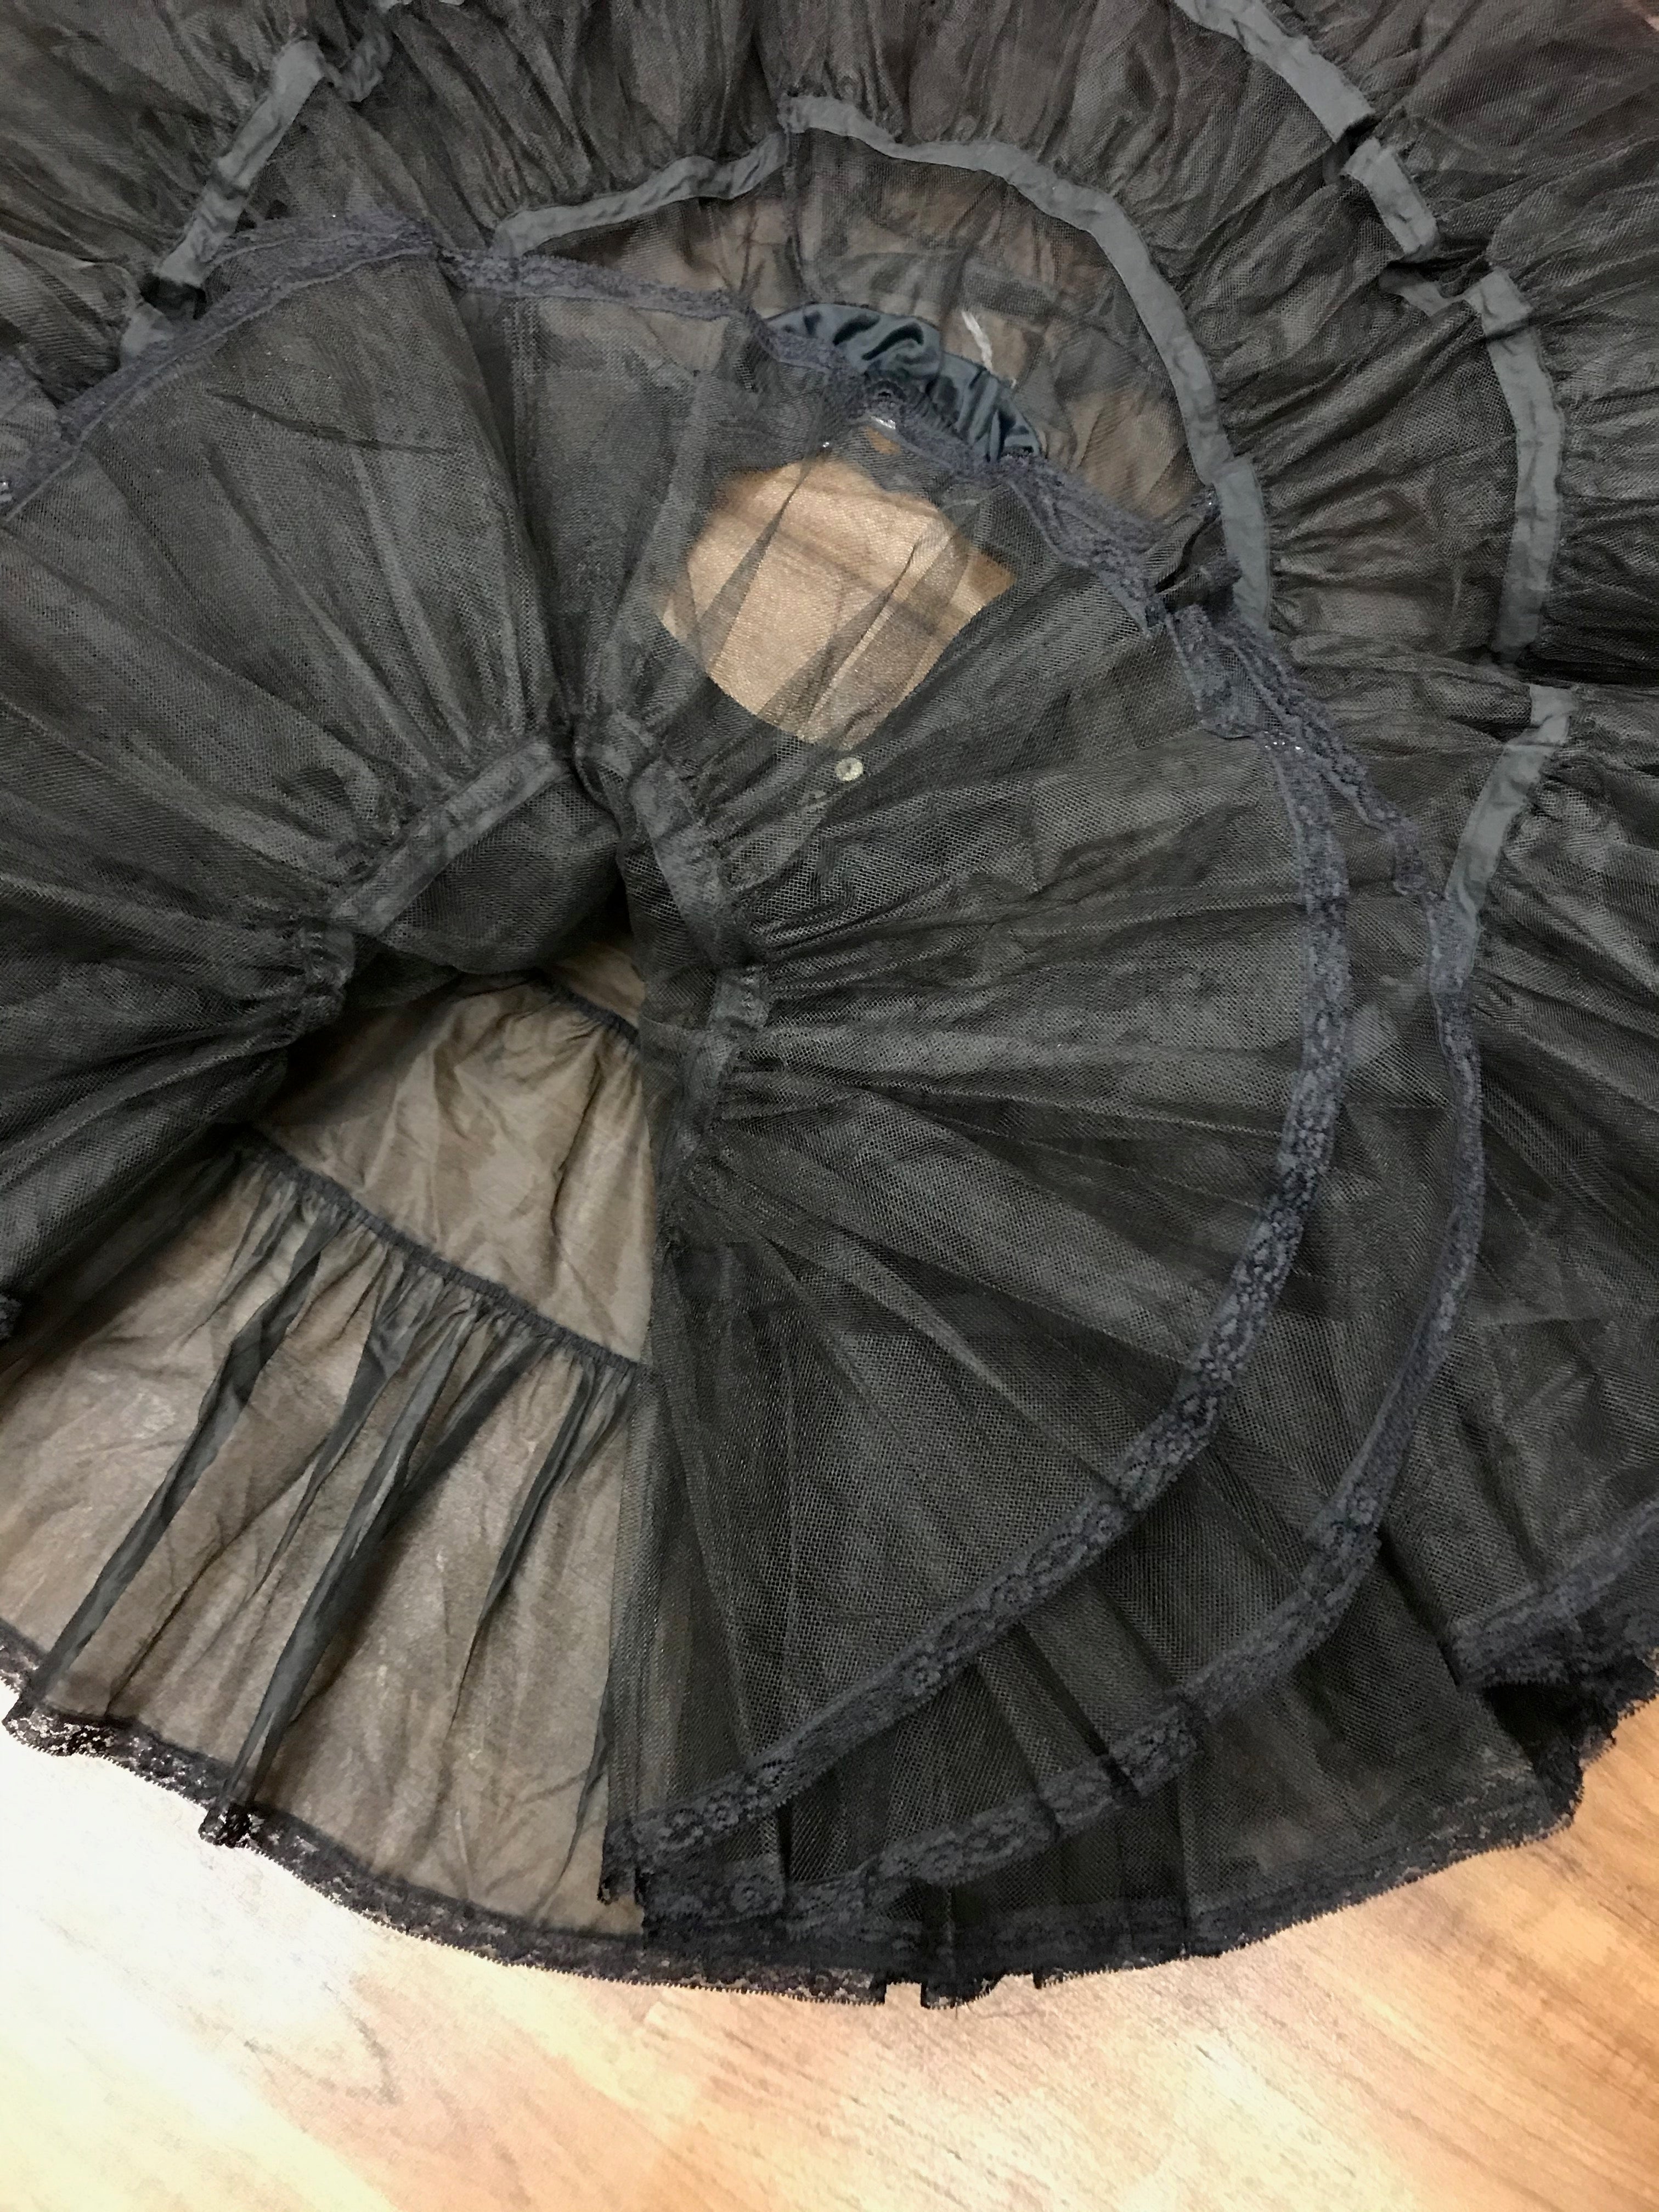 Petticoat 50er Jahre  Stil schwarz